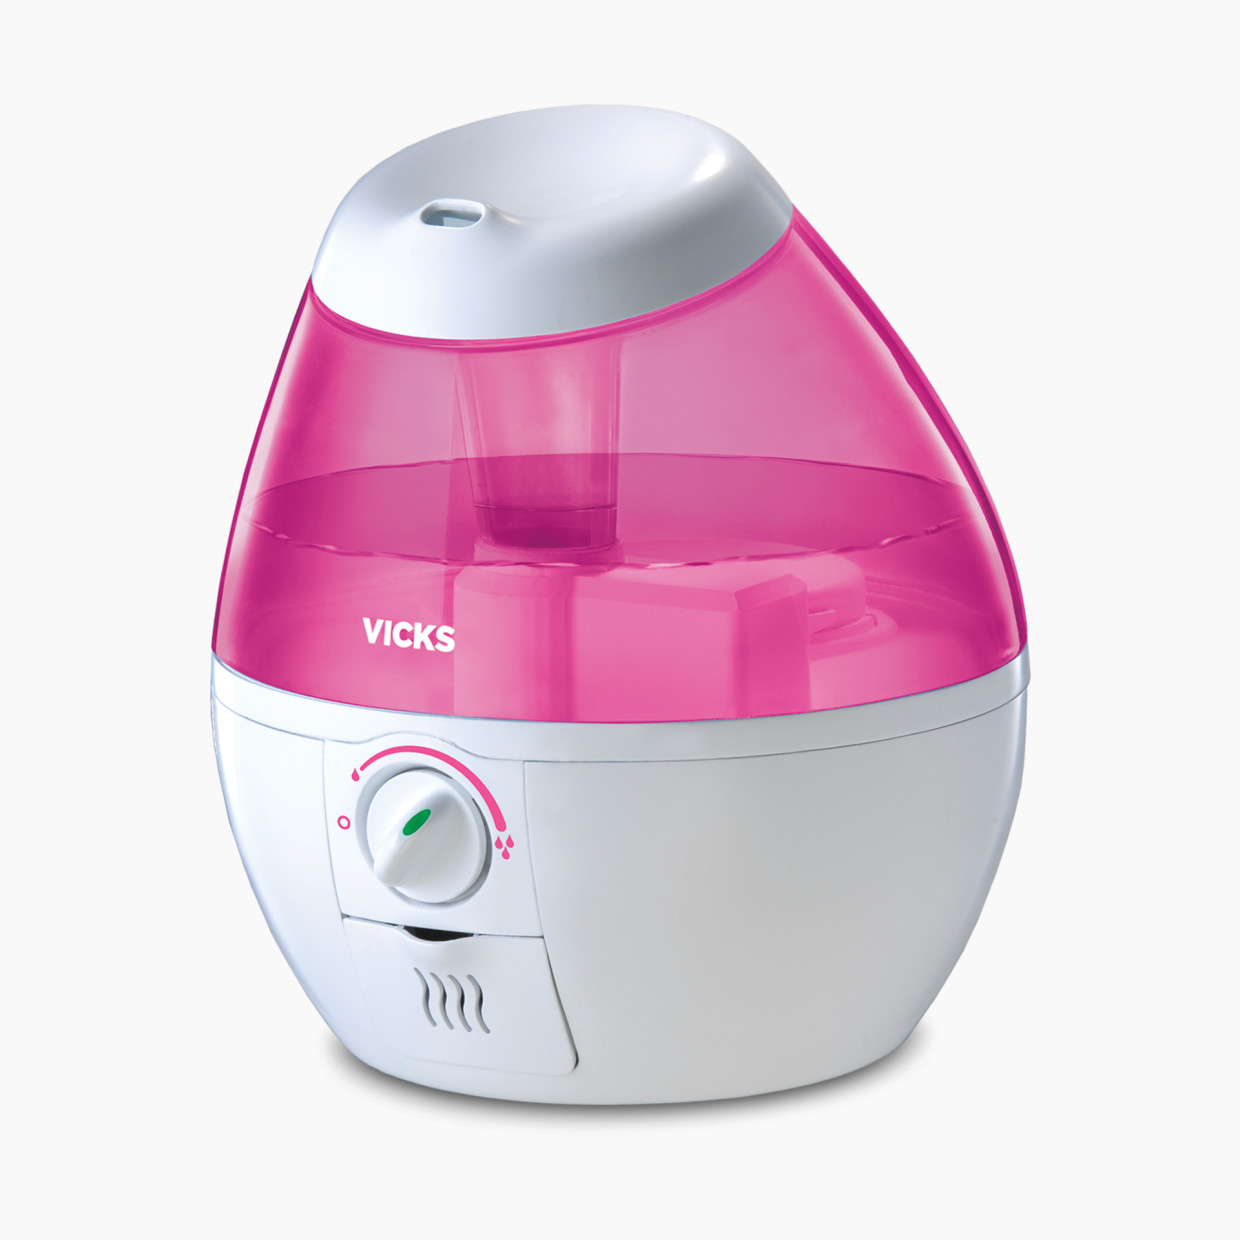 Vicks Mini Filter Free Cool Mist Humidifier - Pink.